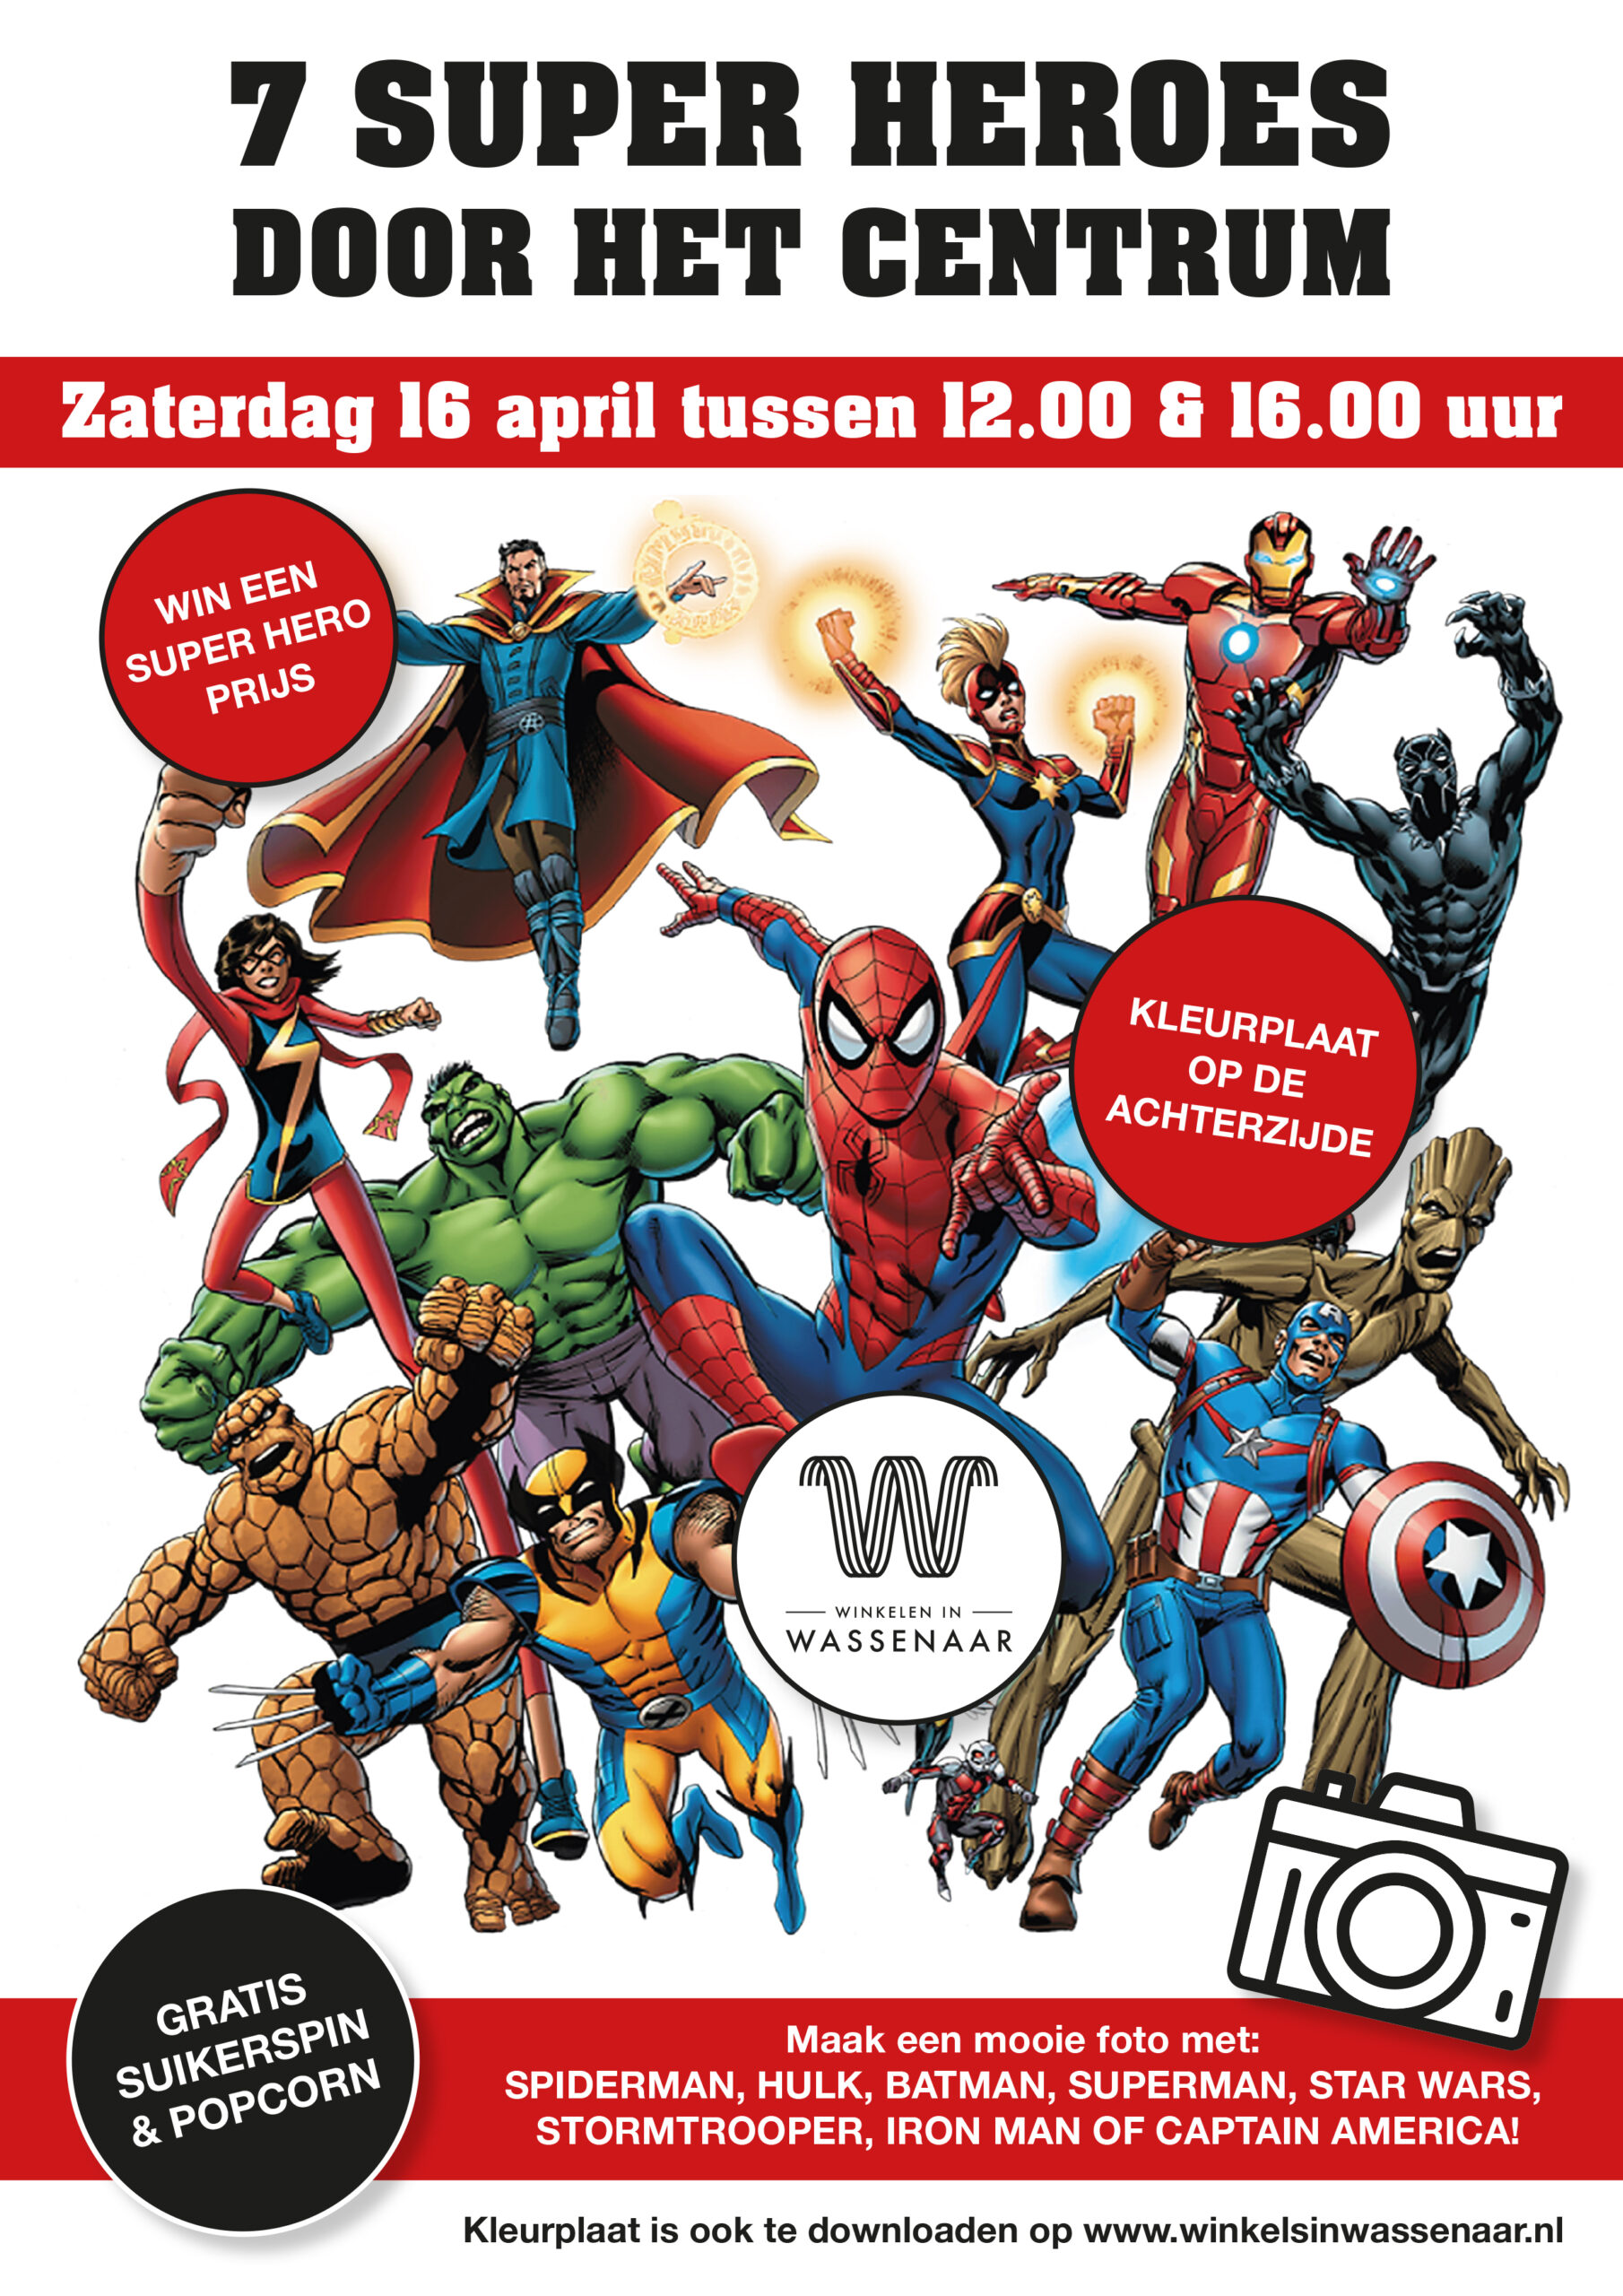 Zaterdag 16 april 7 Super Heroes door het centrum